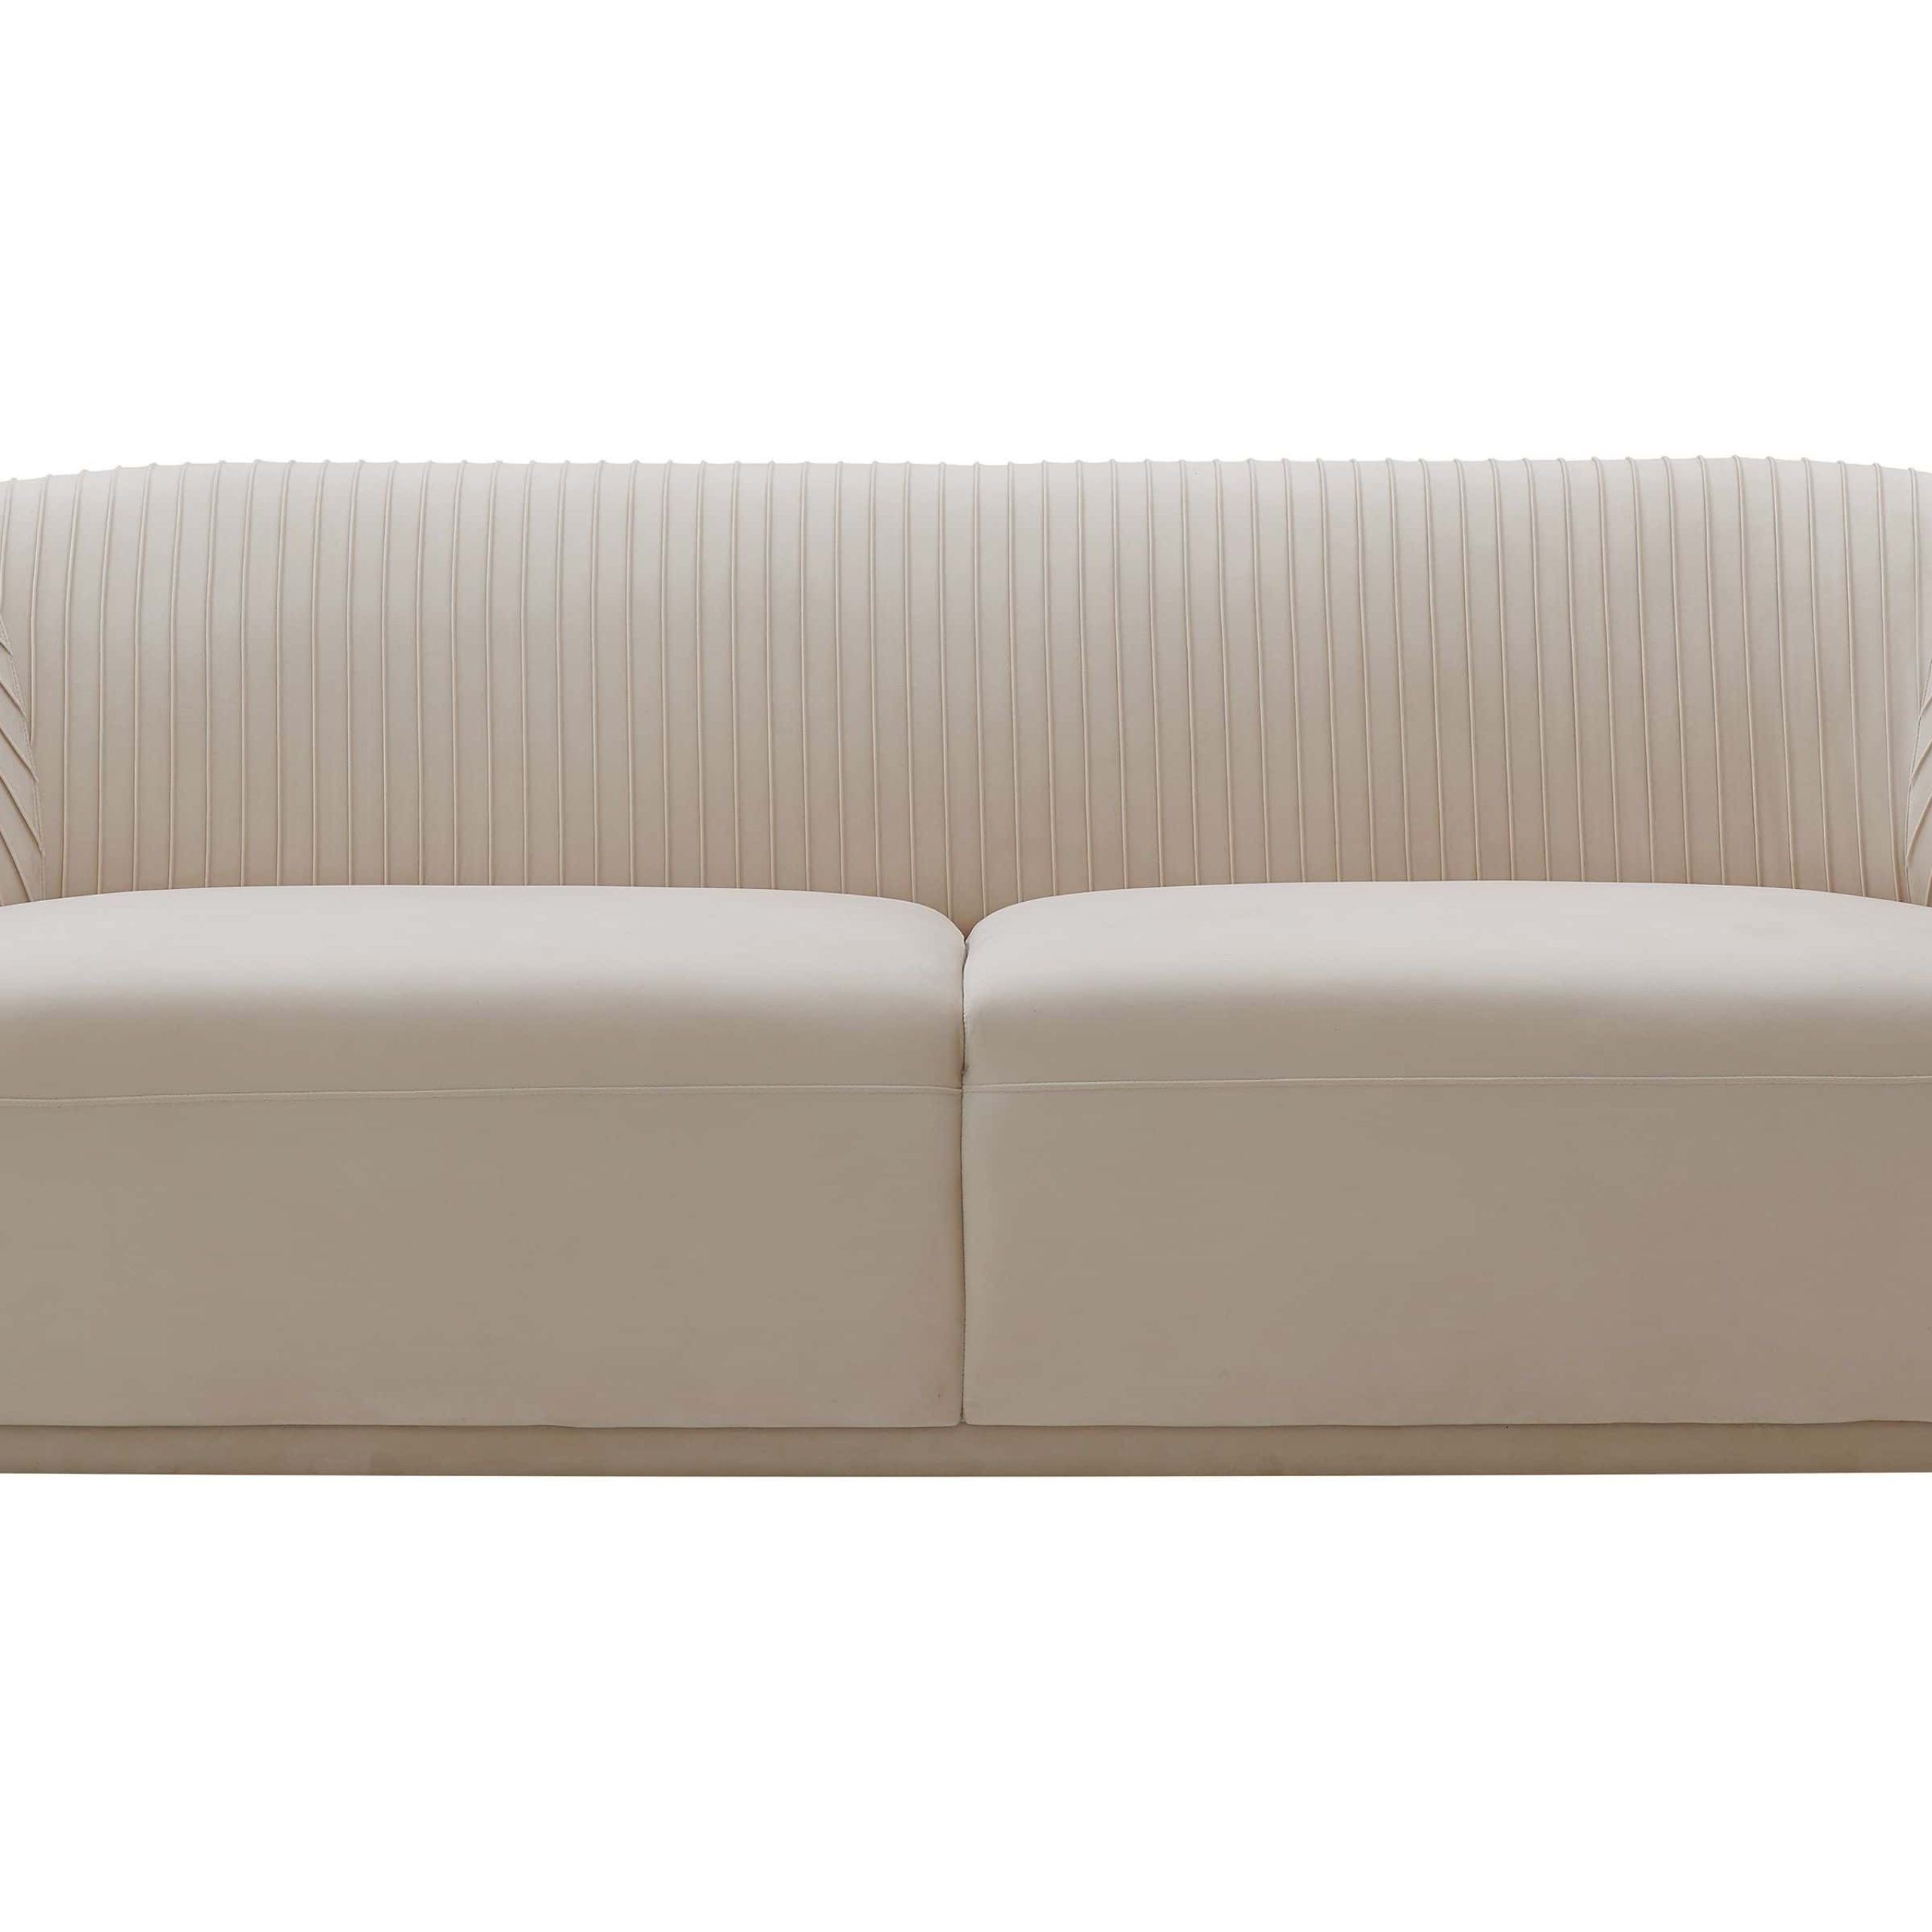 Elegant Beige Velvet Sofas Intended For 2017 Yara Pleated Beige Velvet Sofatov Furniture (View 11 of 15)